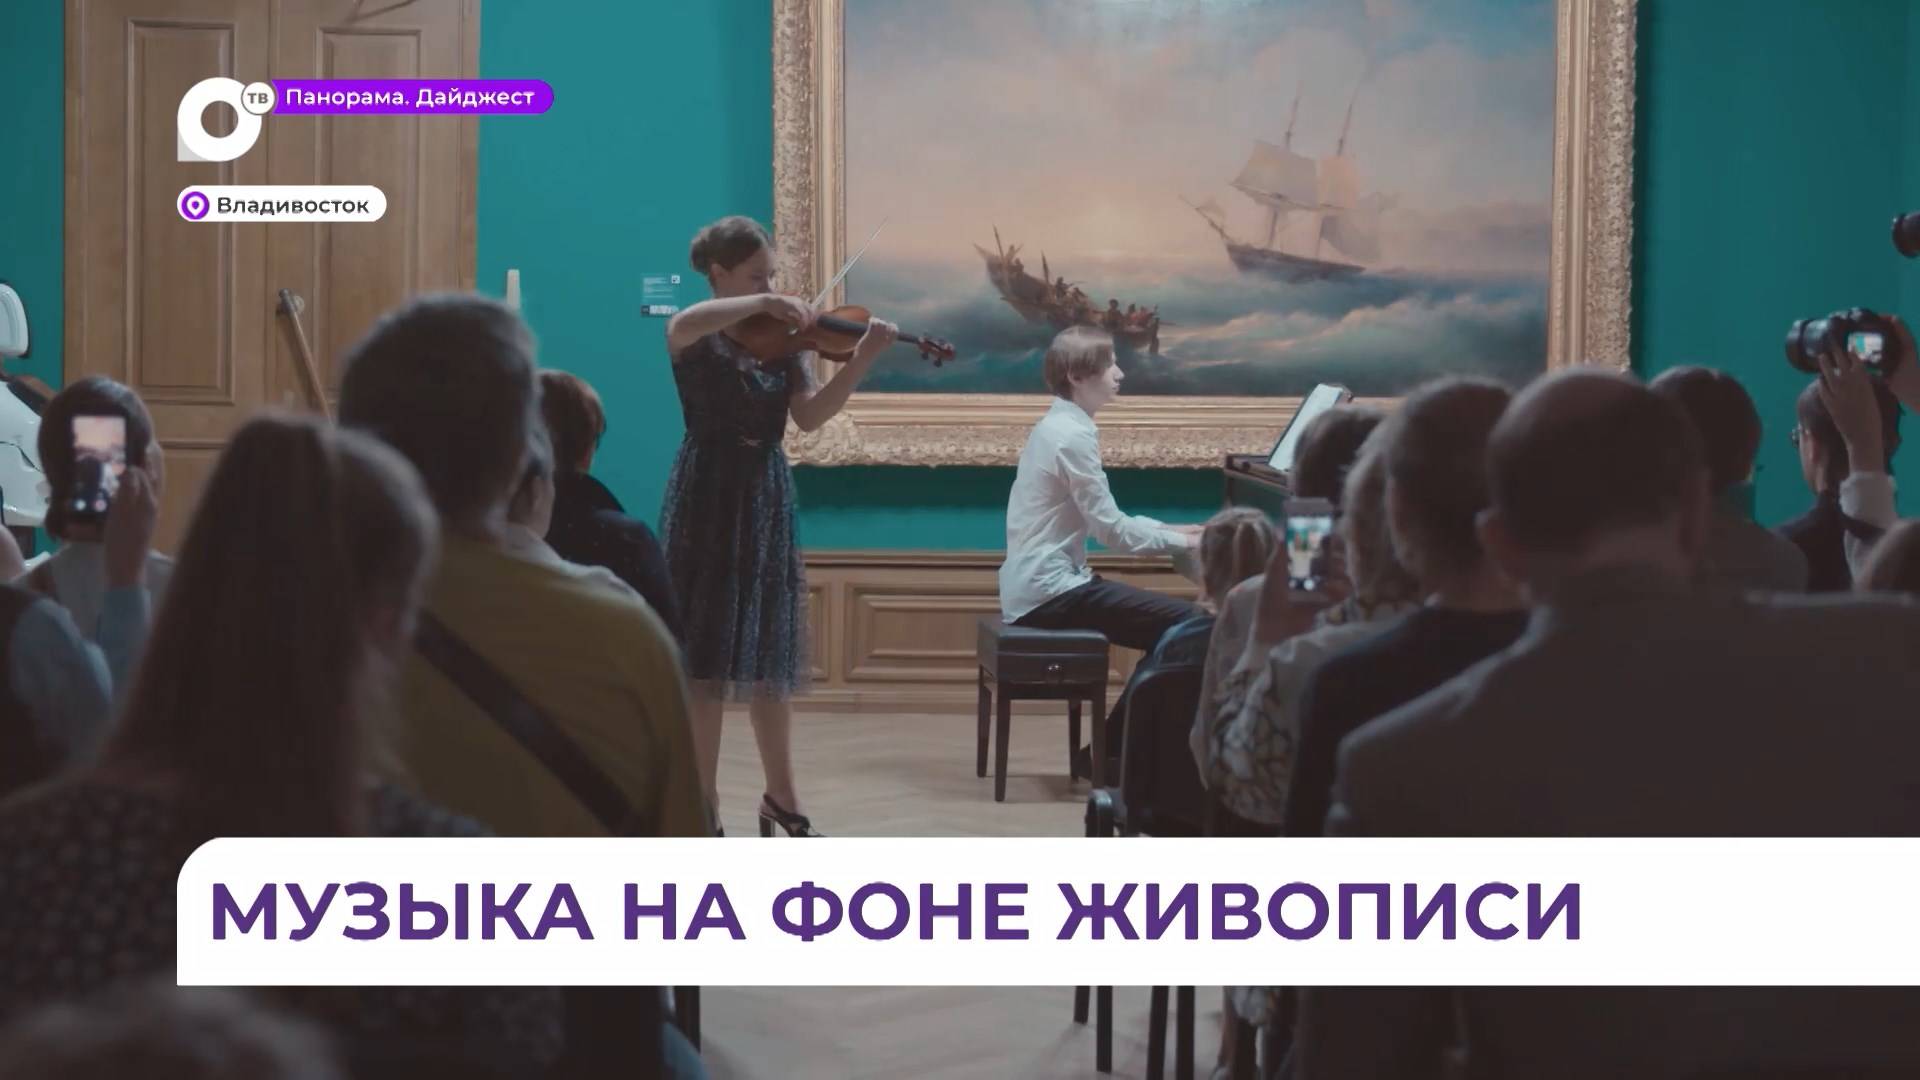 Концерт «Музыка на фоне живописи» состоялся в Приморской картинной галерее